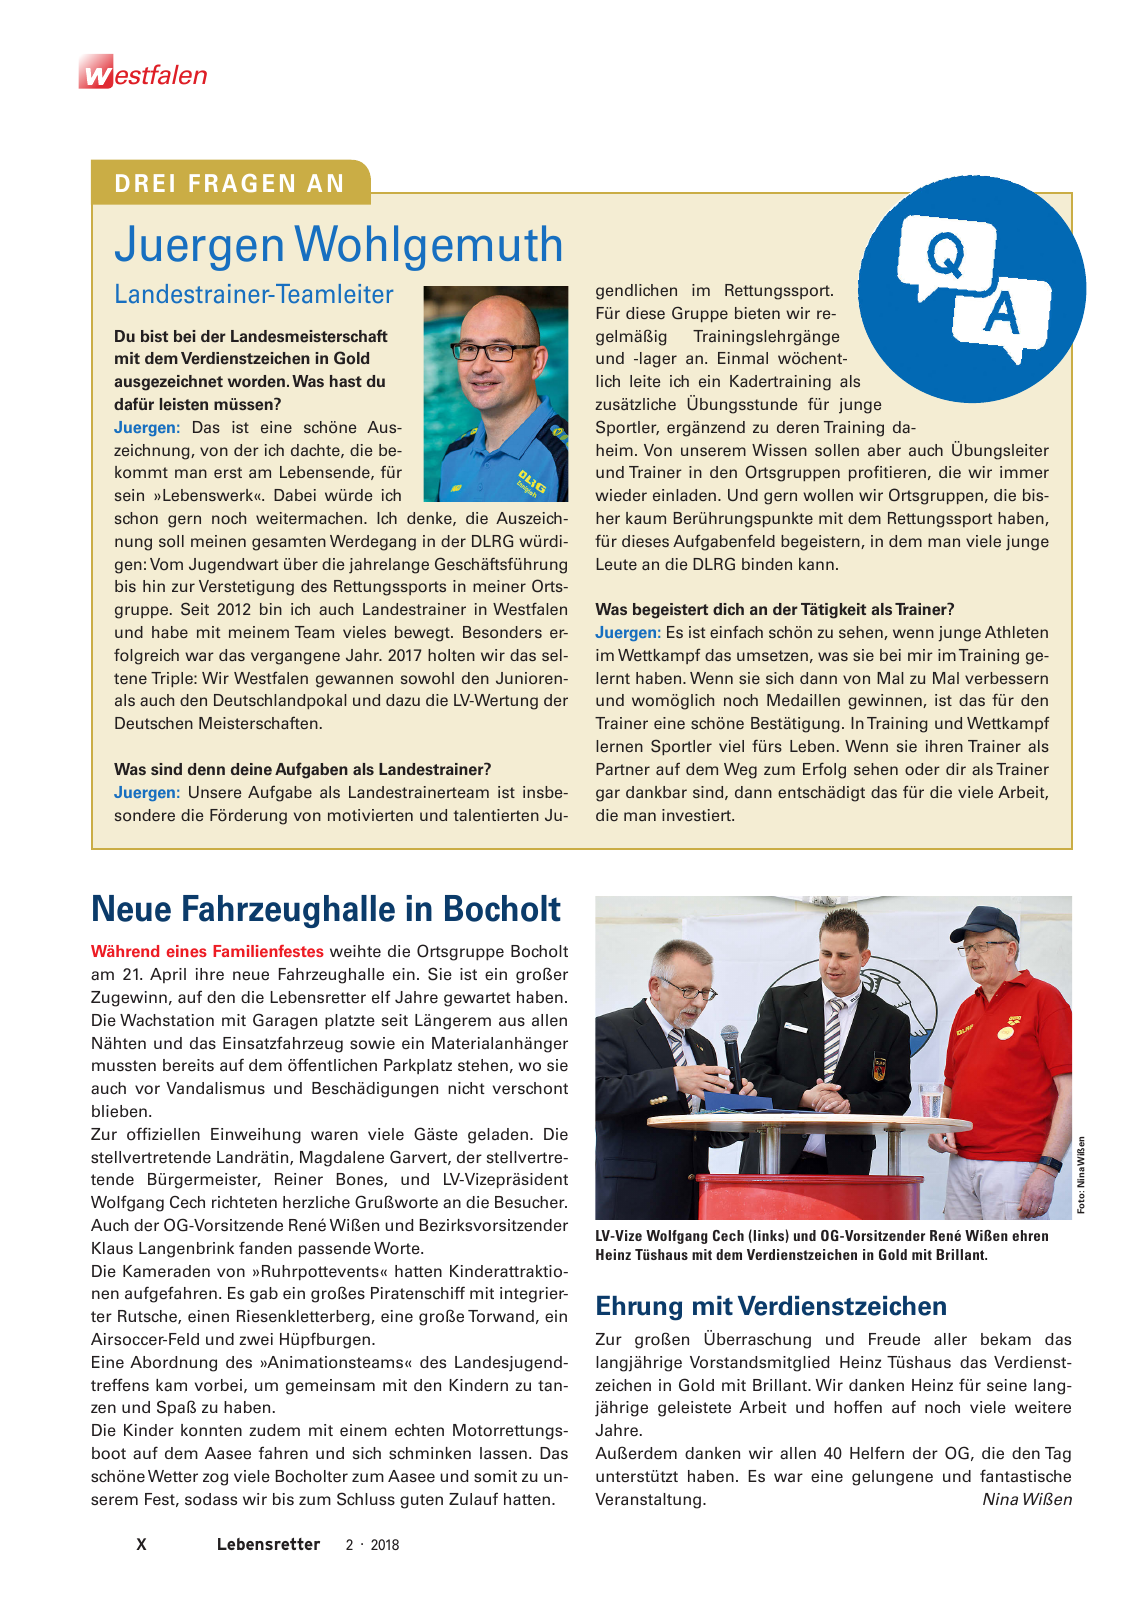 Vorschau Lebensretter 2/2018 - Regionalausgabe Westfalen Seite 12